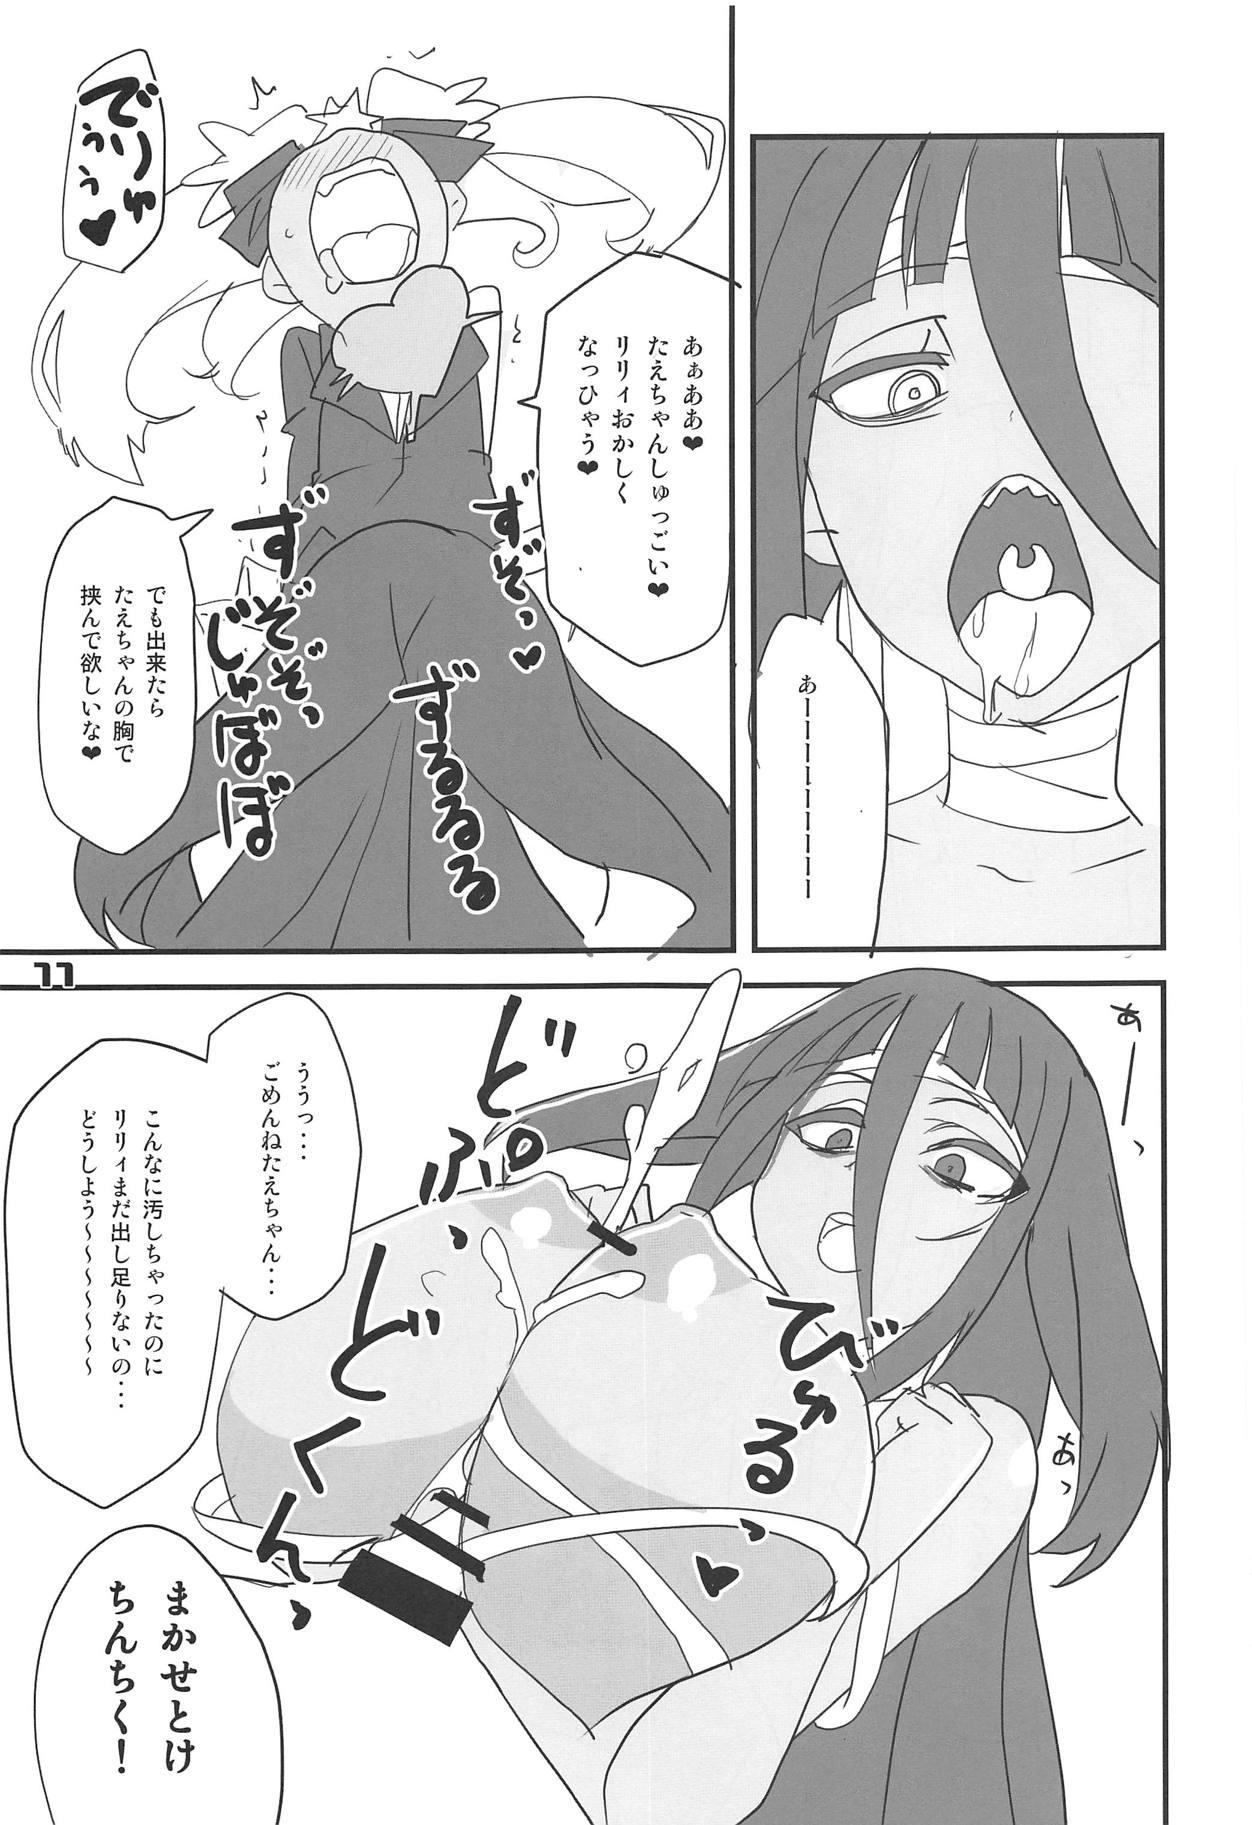 Pervert Furansumeru SaGa - Zombie land saga Lesbiansex - Page 10